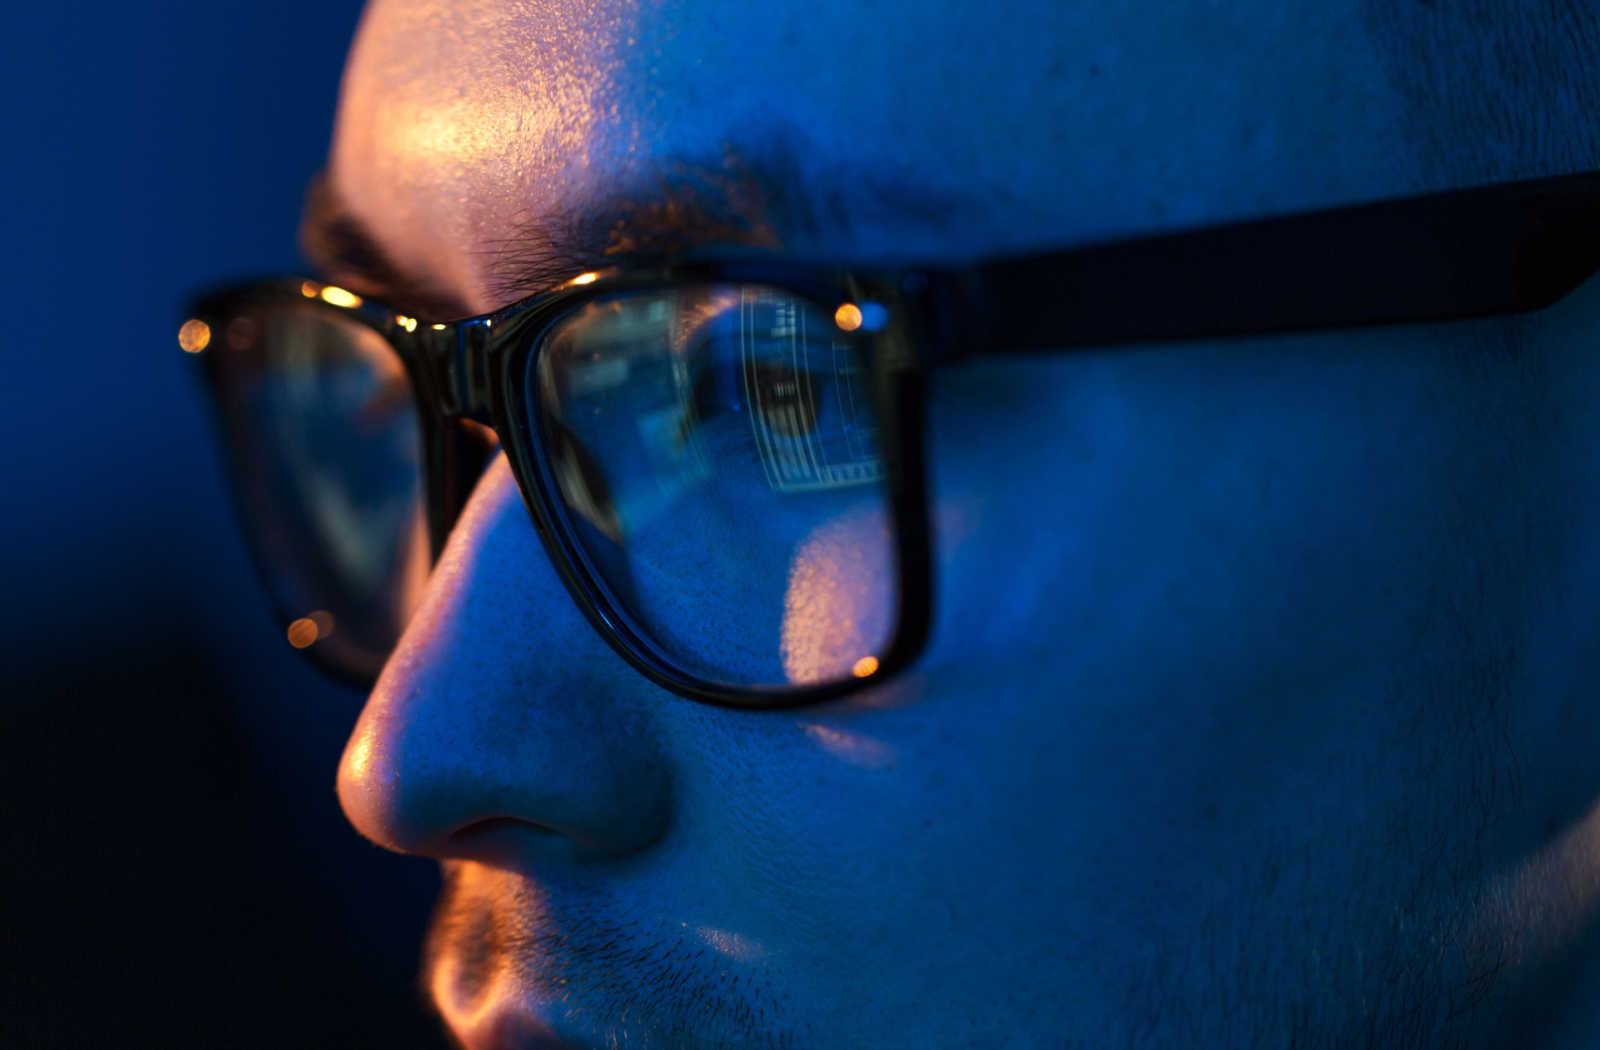 Do Blue Light Glasses Help Dry Eyes?